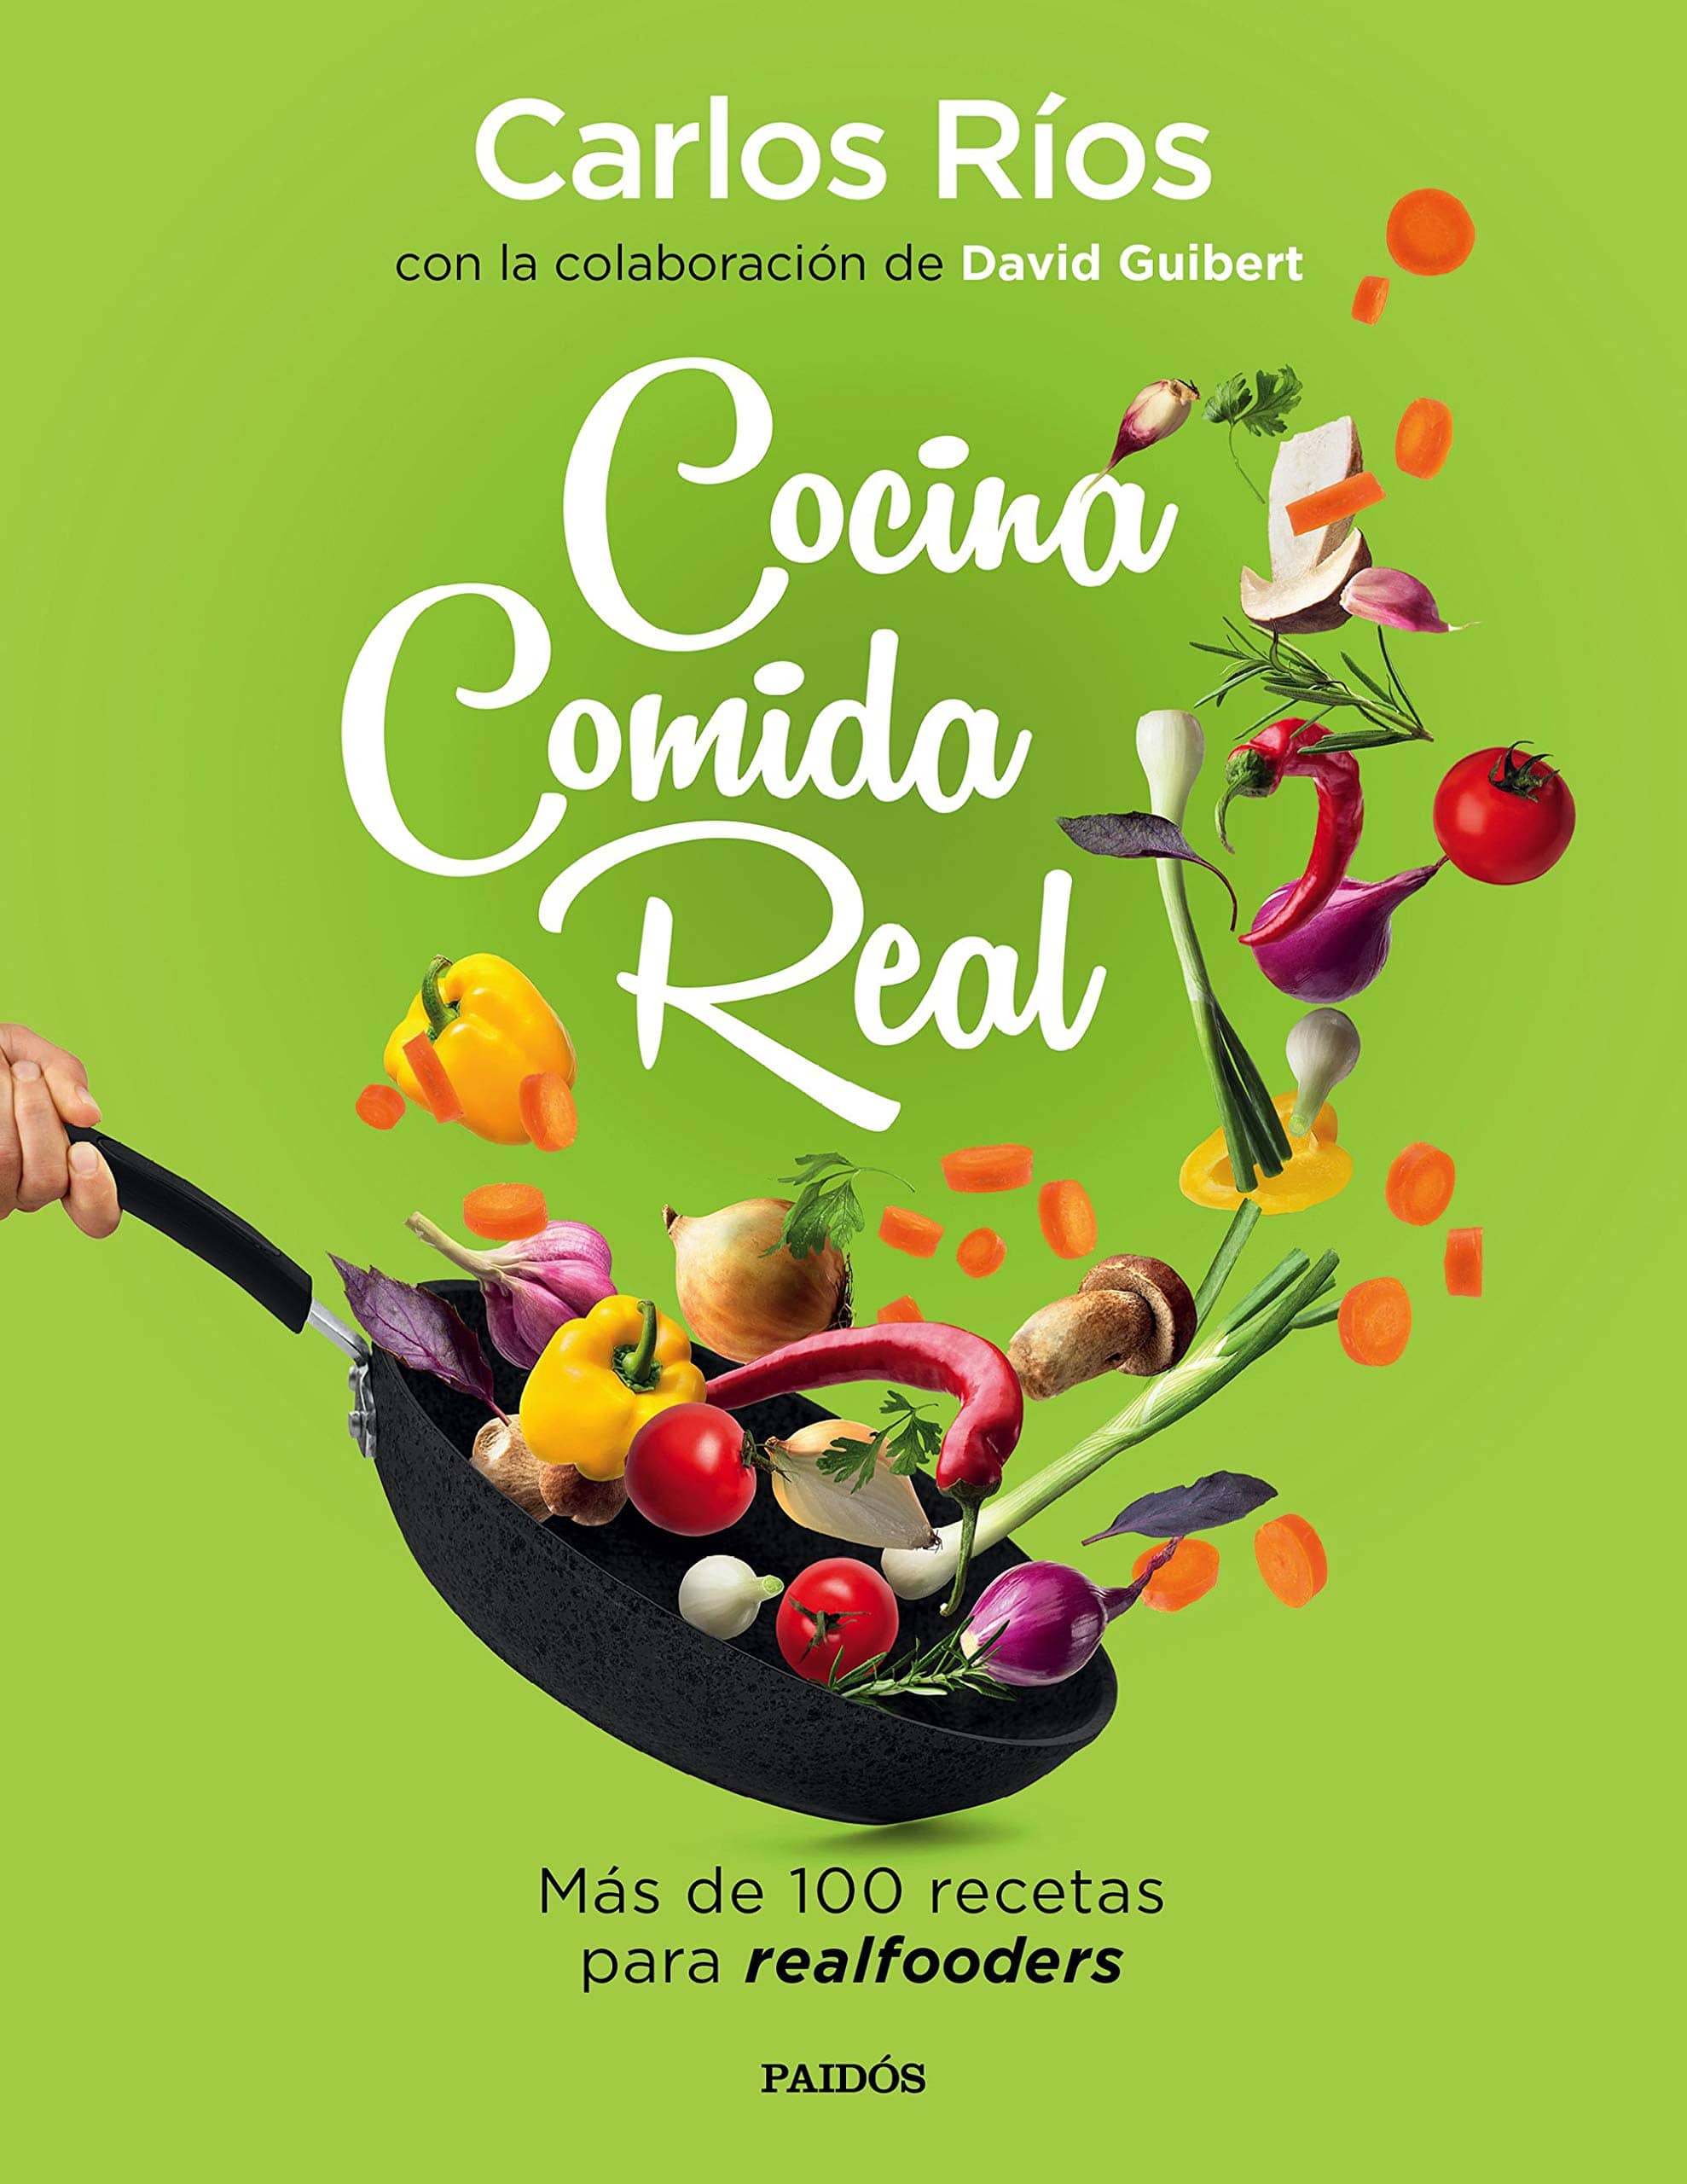 Cocina comida Real más de 100 recetas para realfooders